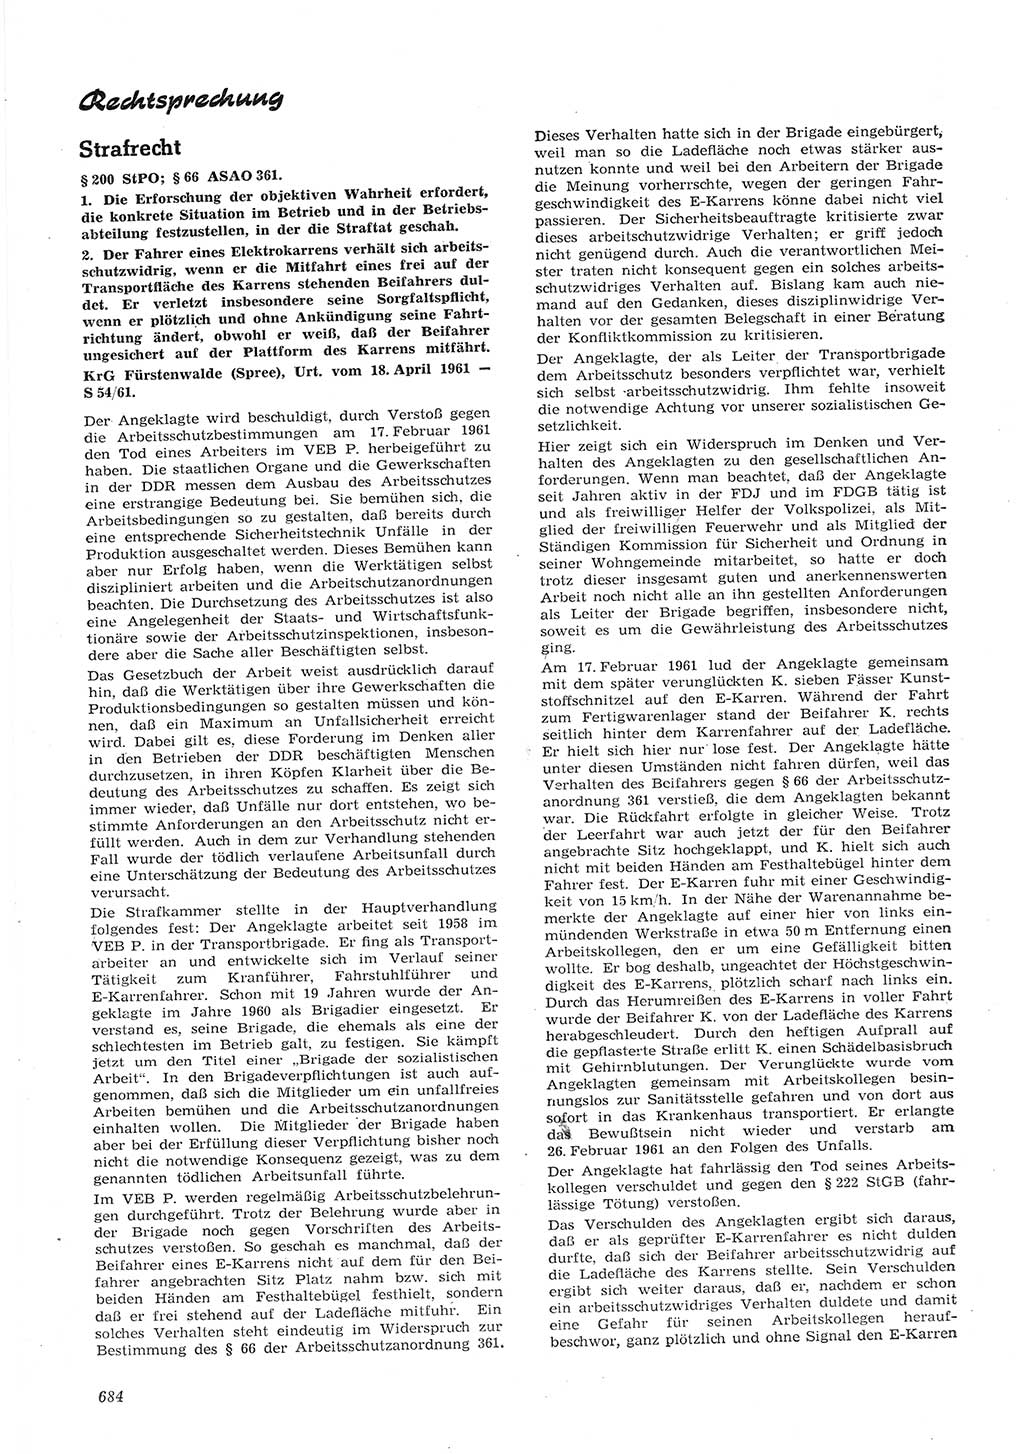 Neue Justiz (NJ), Zeitschrift für Recht und Rechtswissenschaft [Deutsche Demokratische Republik (DDR)], 15. Jahrgang 1961, Seite 684 (NJ DDR 1961, S. 684)